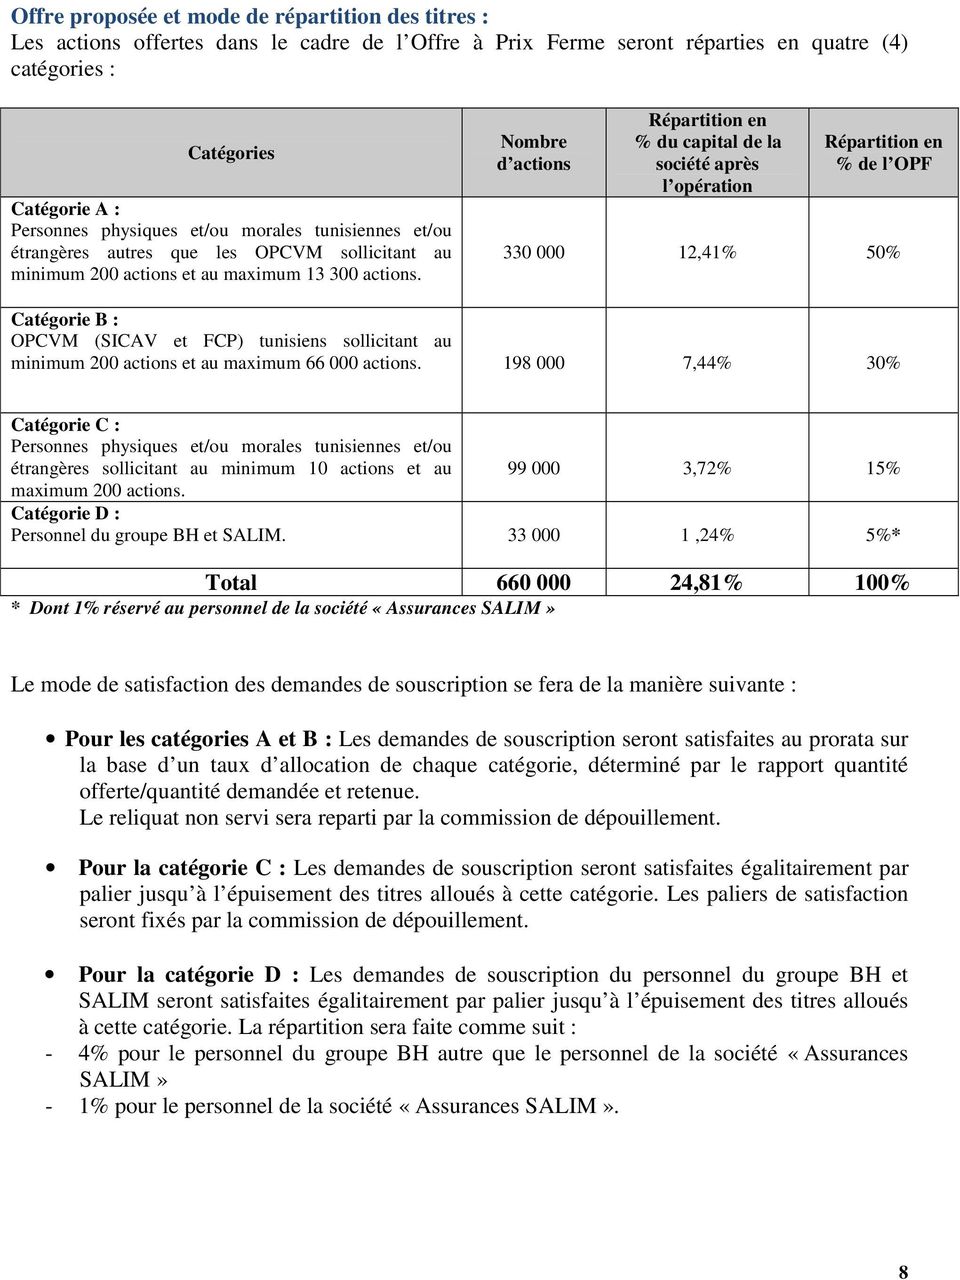 Nombre d actions Répartition en % du capital de la société après l opération Répartition en % de l OPF 330 000 12,41% 50% Catégorie B : OPCVM (SICAV et FCP) tunisiens sollicitant au minimum 200